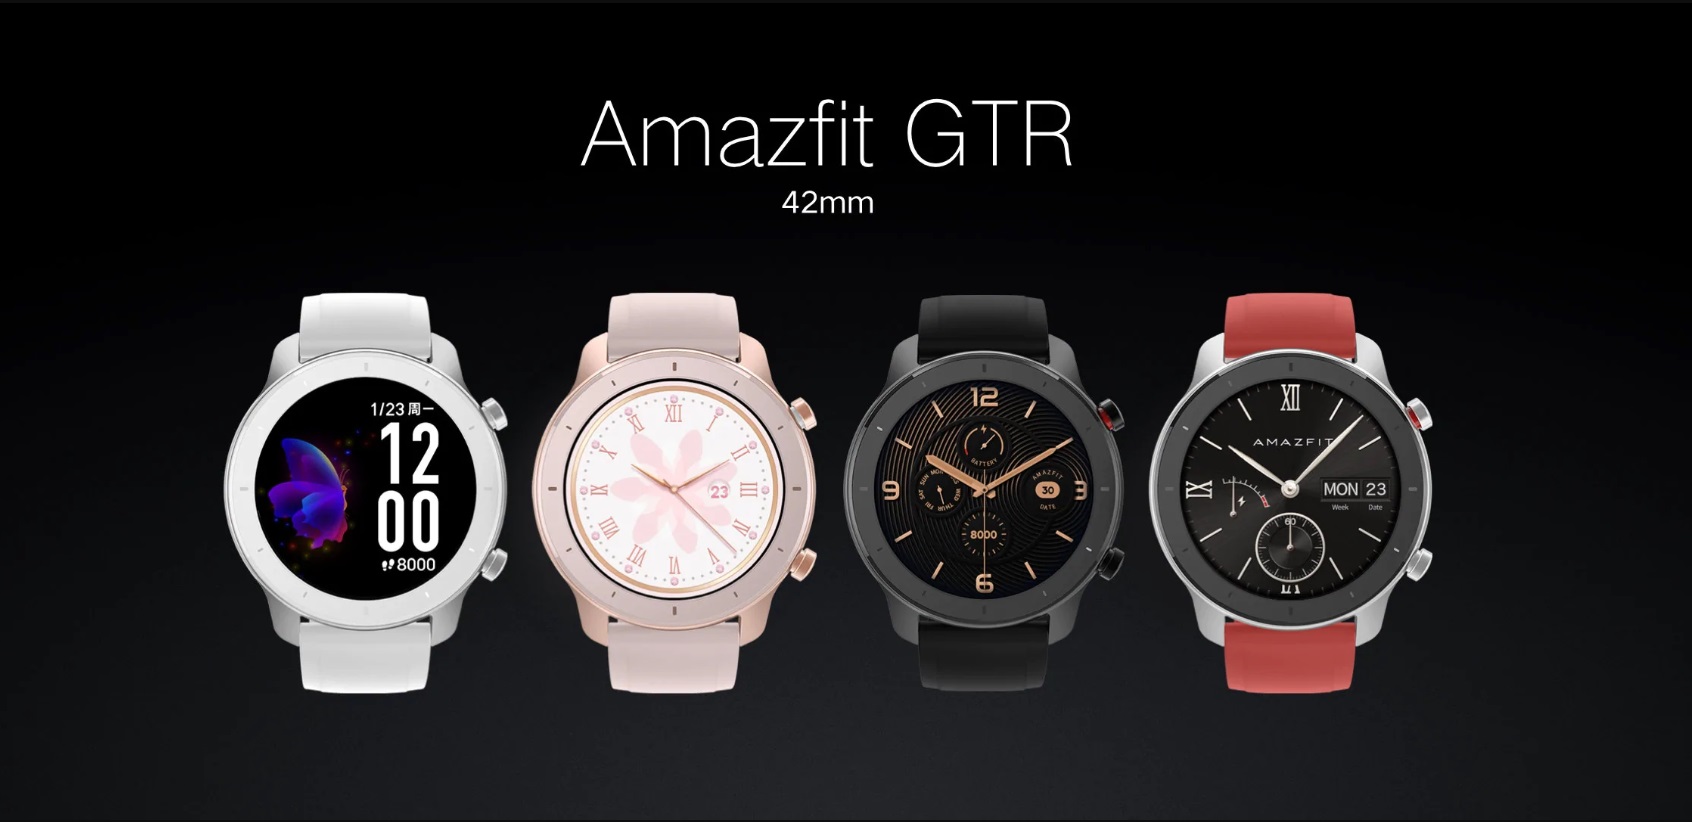 Презентований смарт-годинник Amazfit GTR з неймовірною автономністю та функціоналом